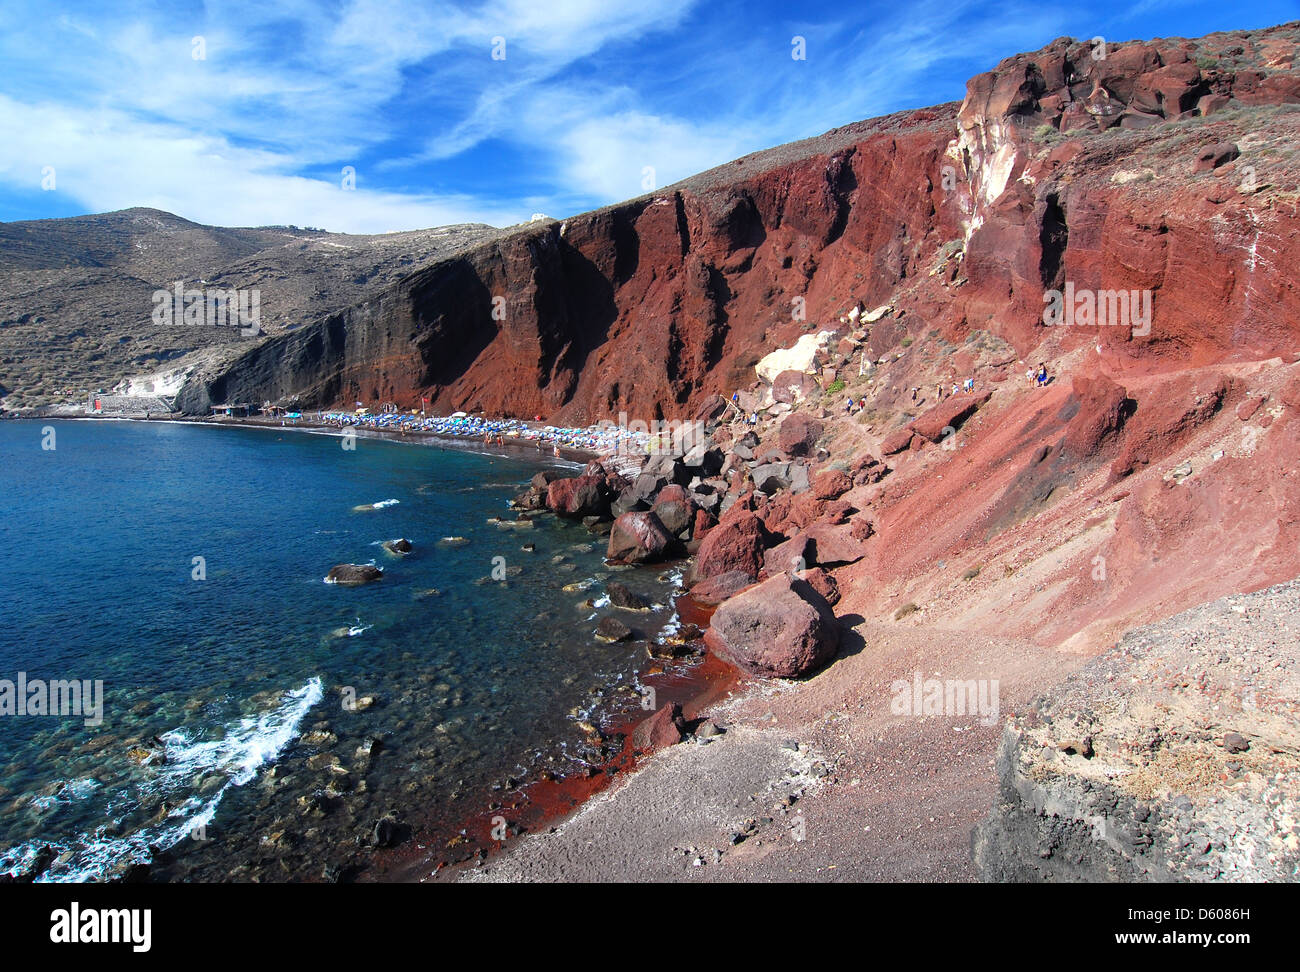 Roter Strand ist eines der schönsten und berühmtesten Strände von Santorini. Schwarzen und roten vulkanischen Steinen und heißem Wasser. Griechenland Stockfoto